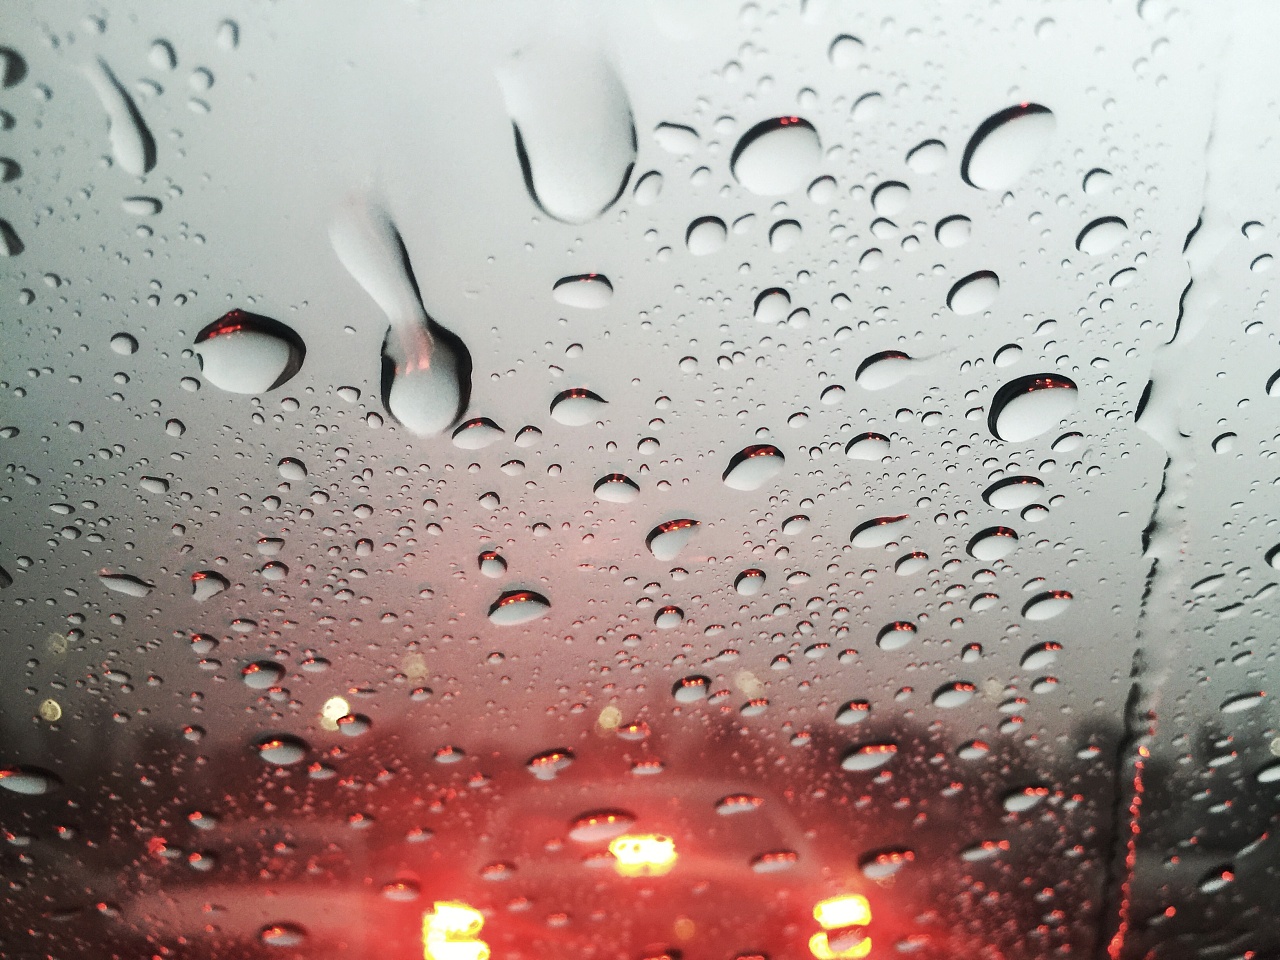 拍摄 桌面 高清 1920 1080 雨天 大雨 手机摄影 车窗 瓢泼大雨 灰色